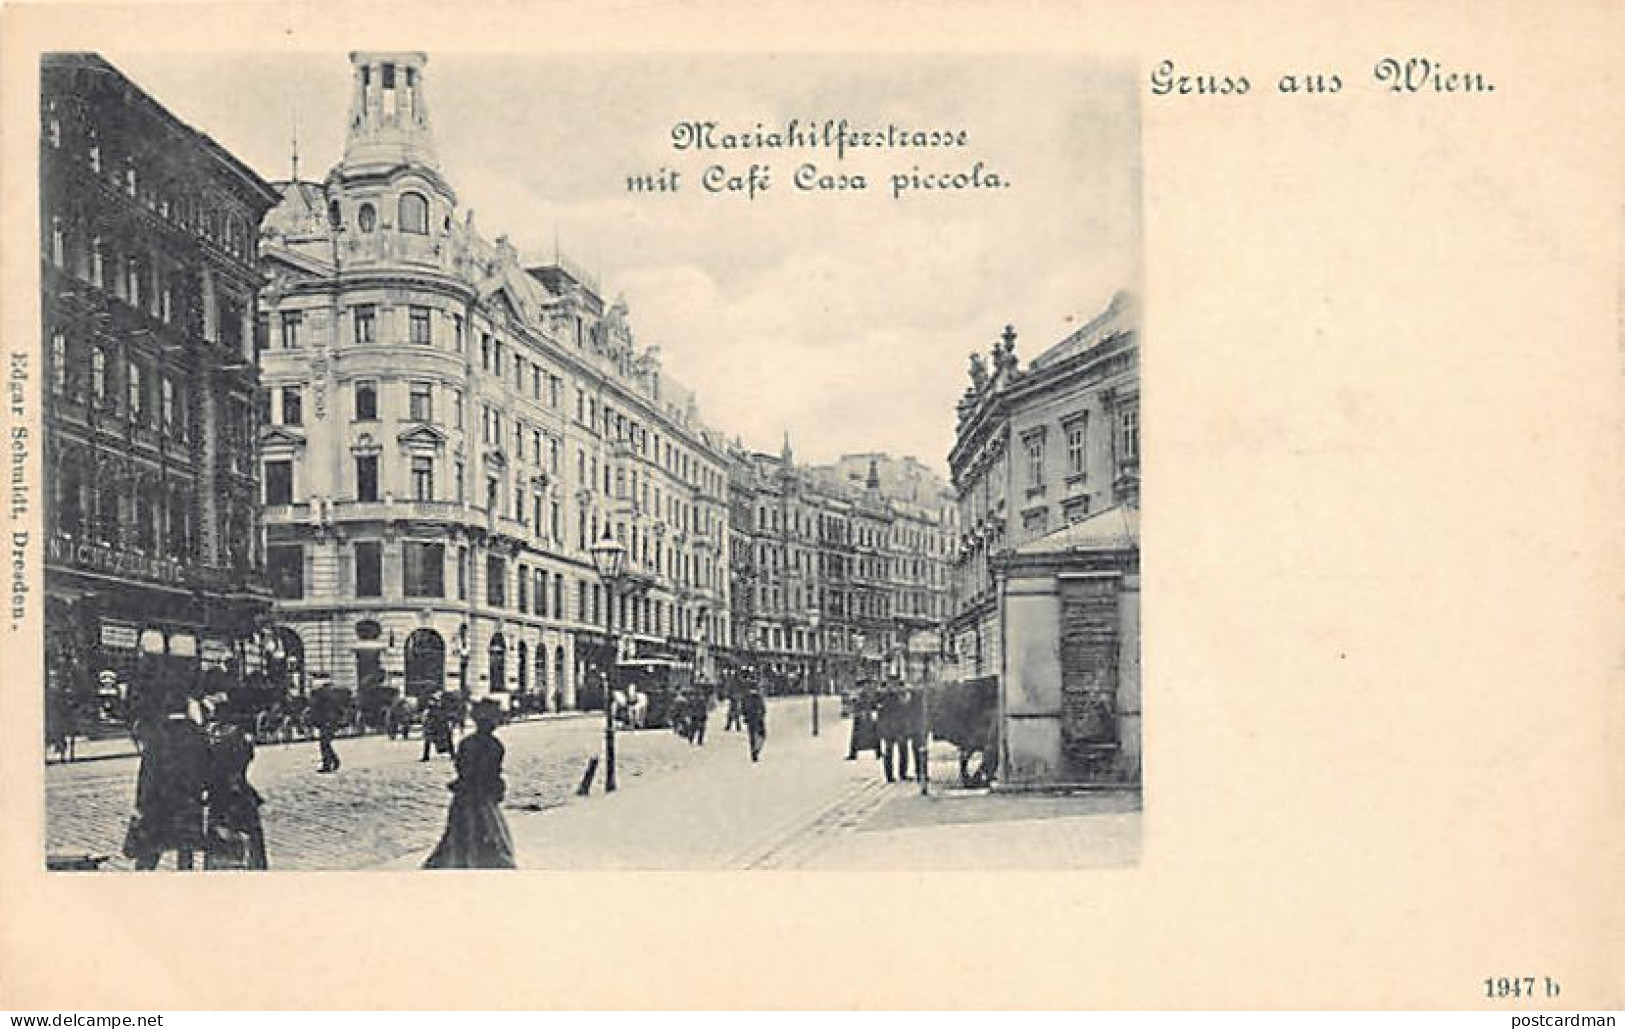 Österreich - Wien - Mariahilferstrasse - Café Casa Piccola - Verlag Edgar Schmidt 1947b - Wien Mitte